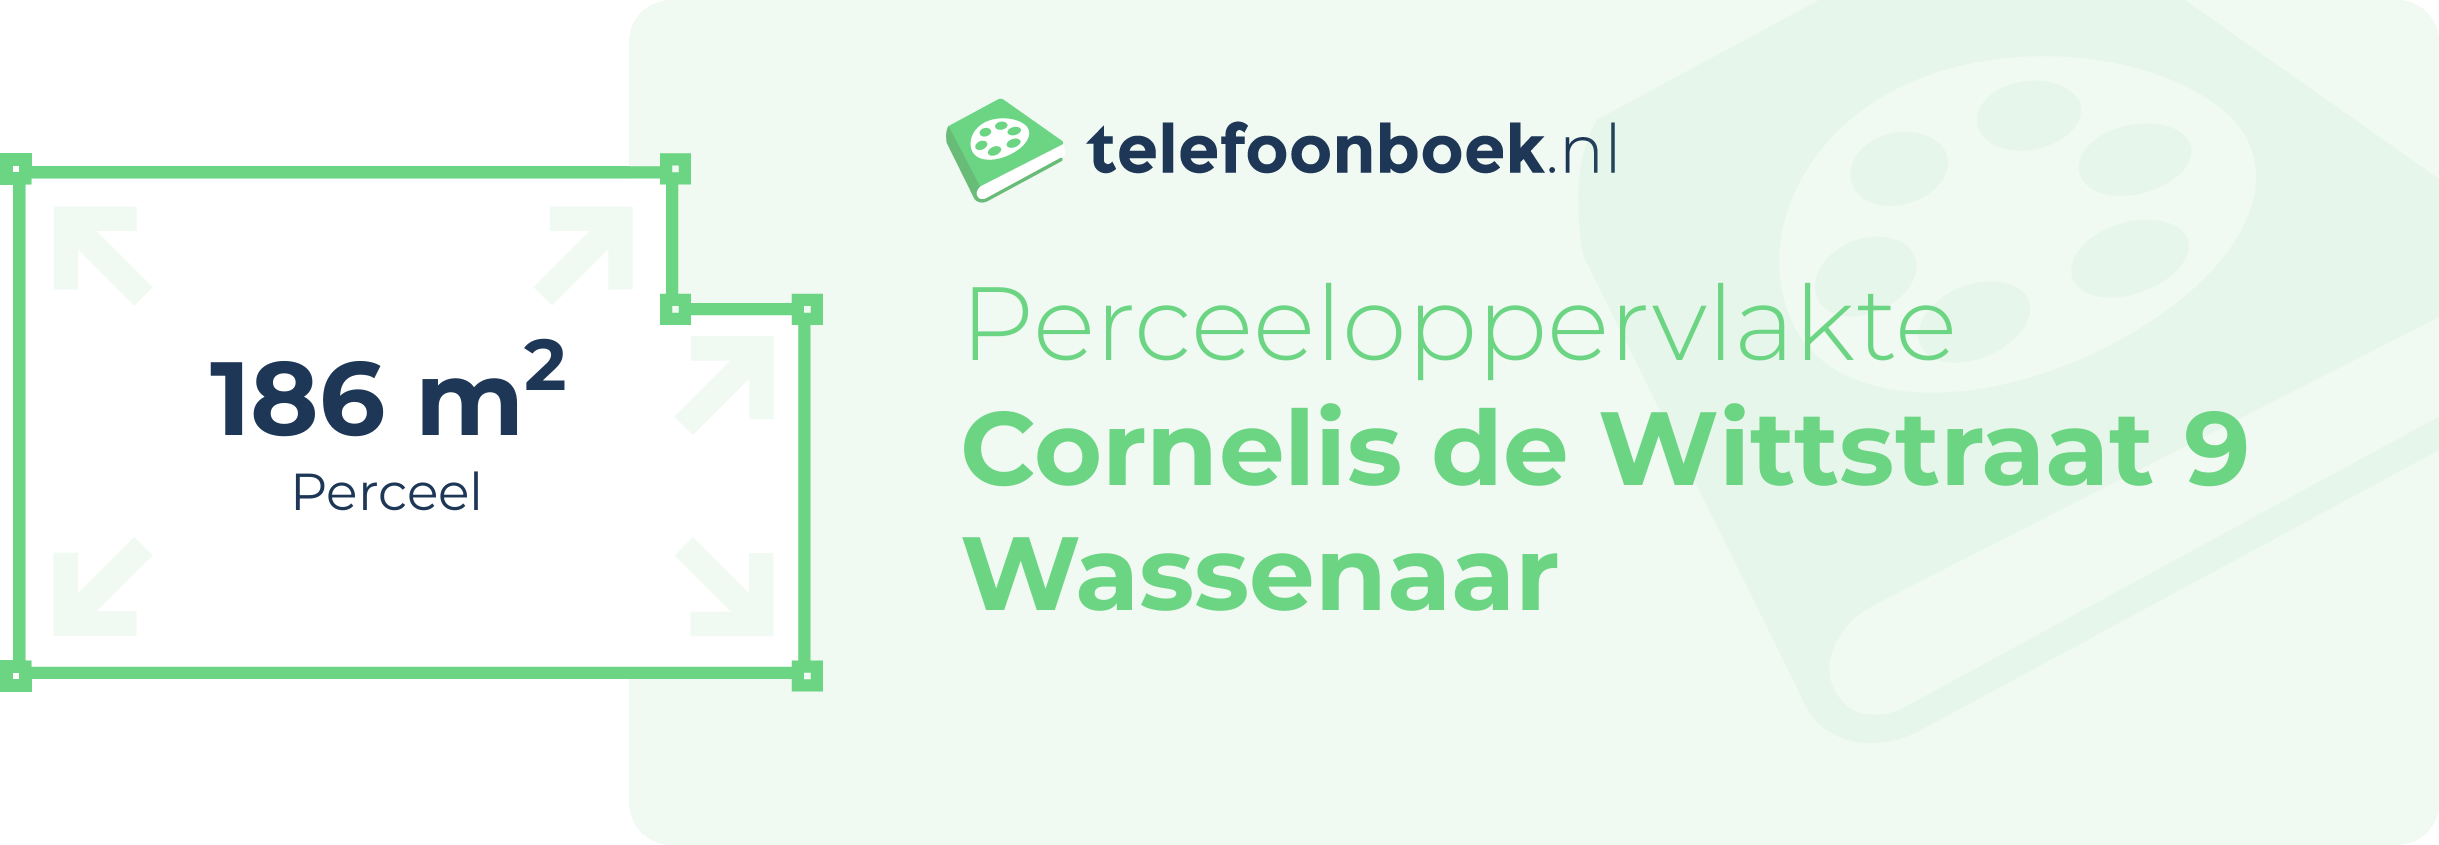 Perceeloppervlakte Cornelis De Wittstraat 9 Wassenaar